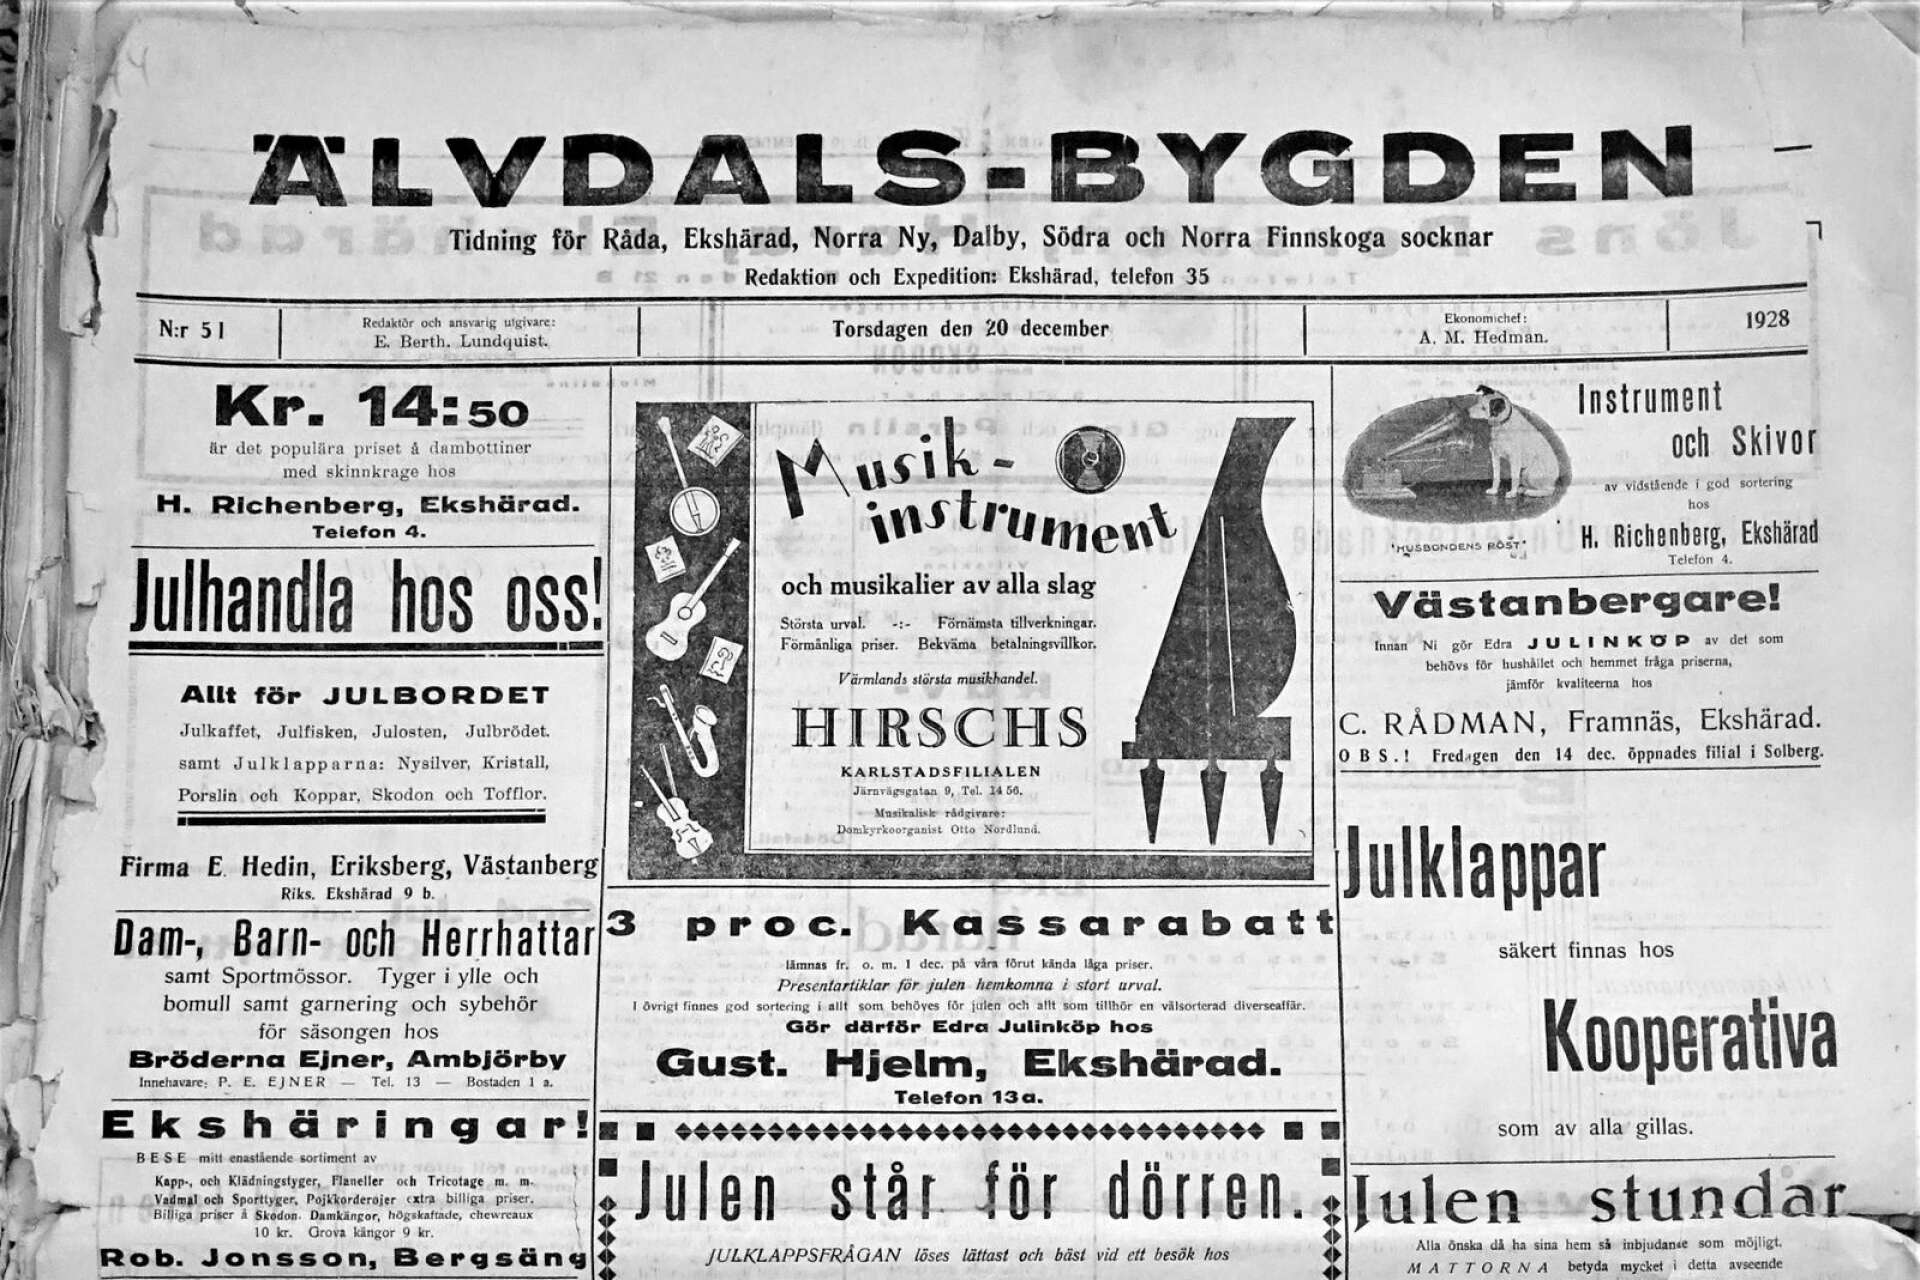    Älvdals-Bygden, förstasida från 1928.                            